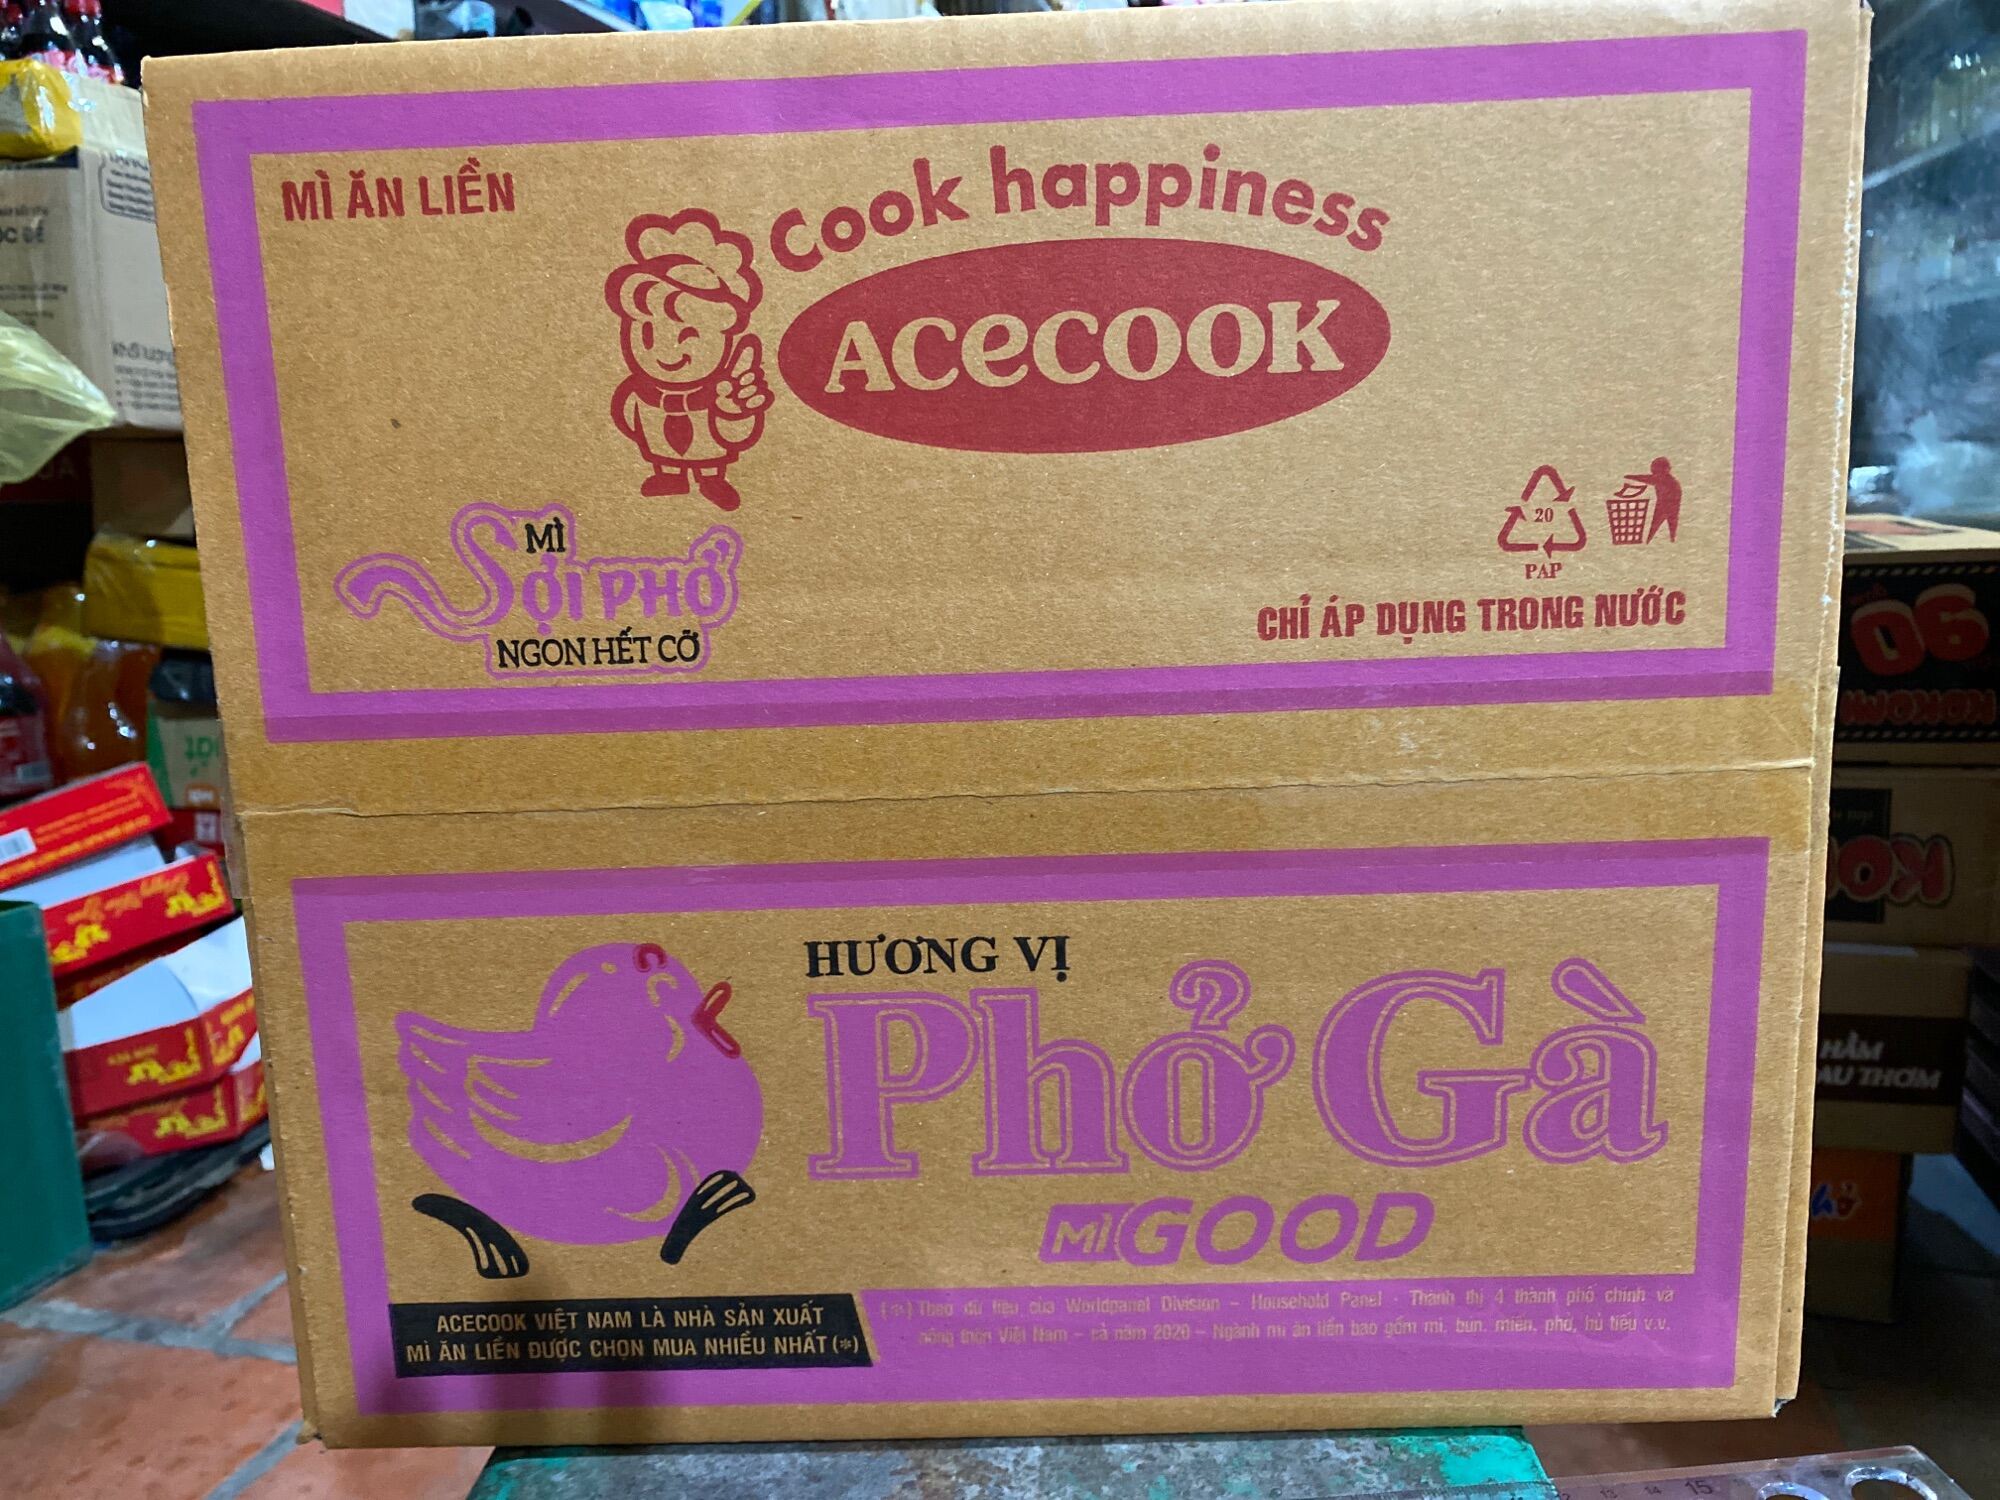 Phở gà good Acecook thùng 30 gói x 68gam